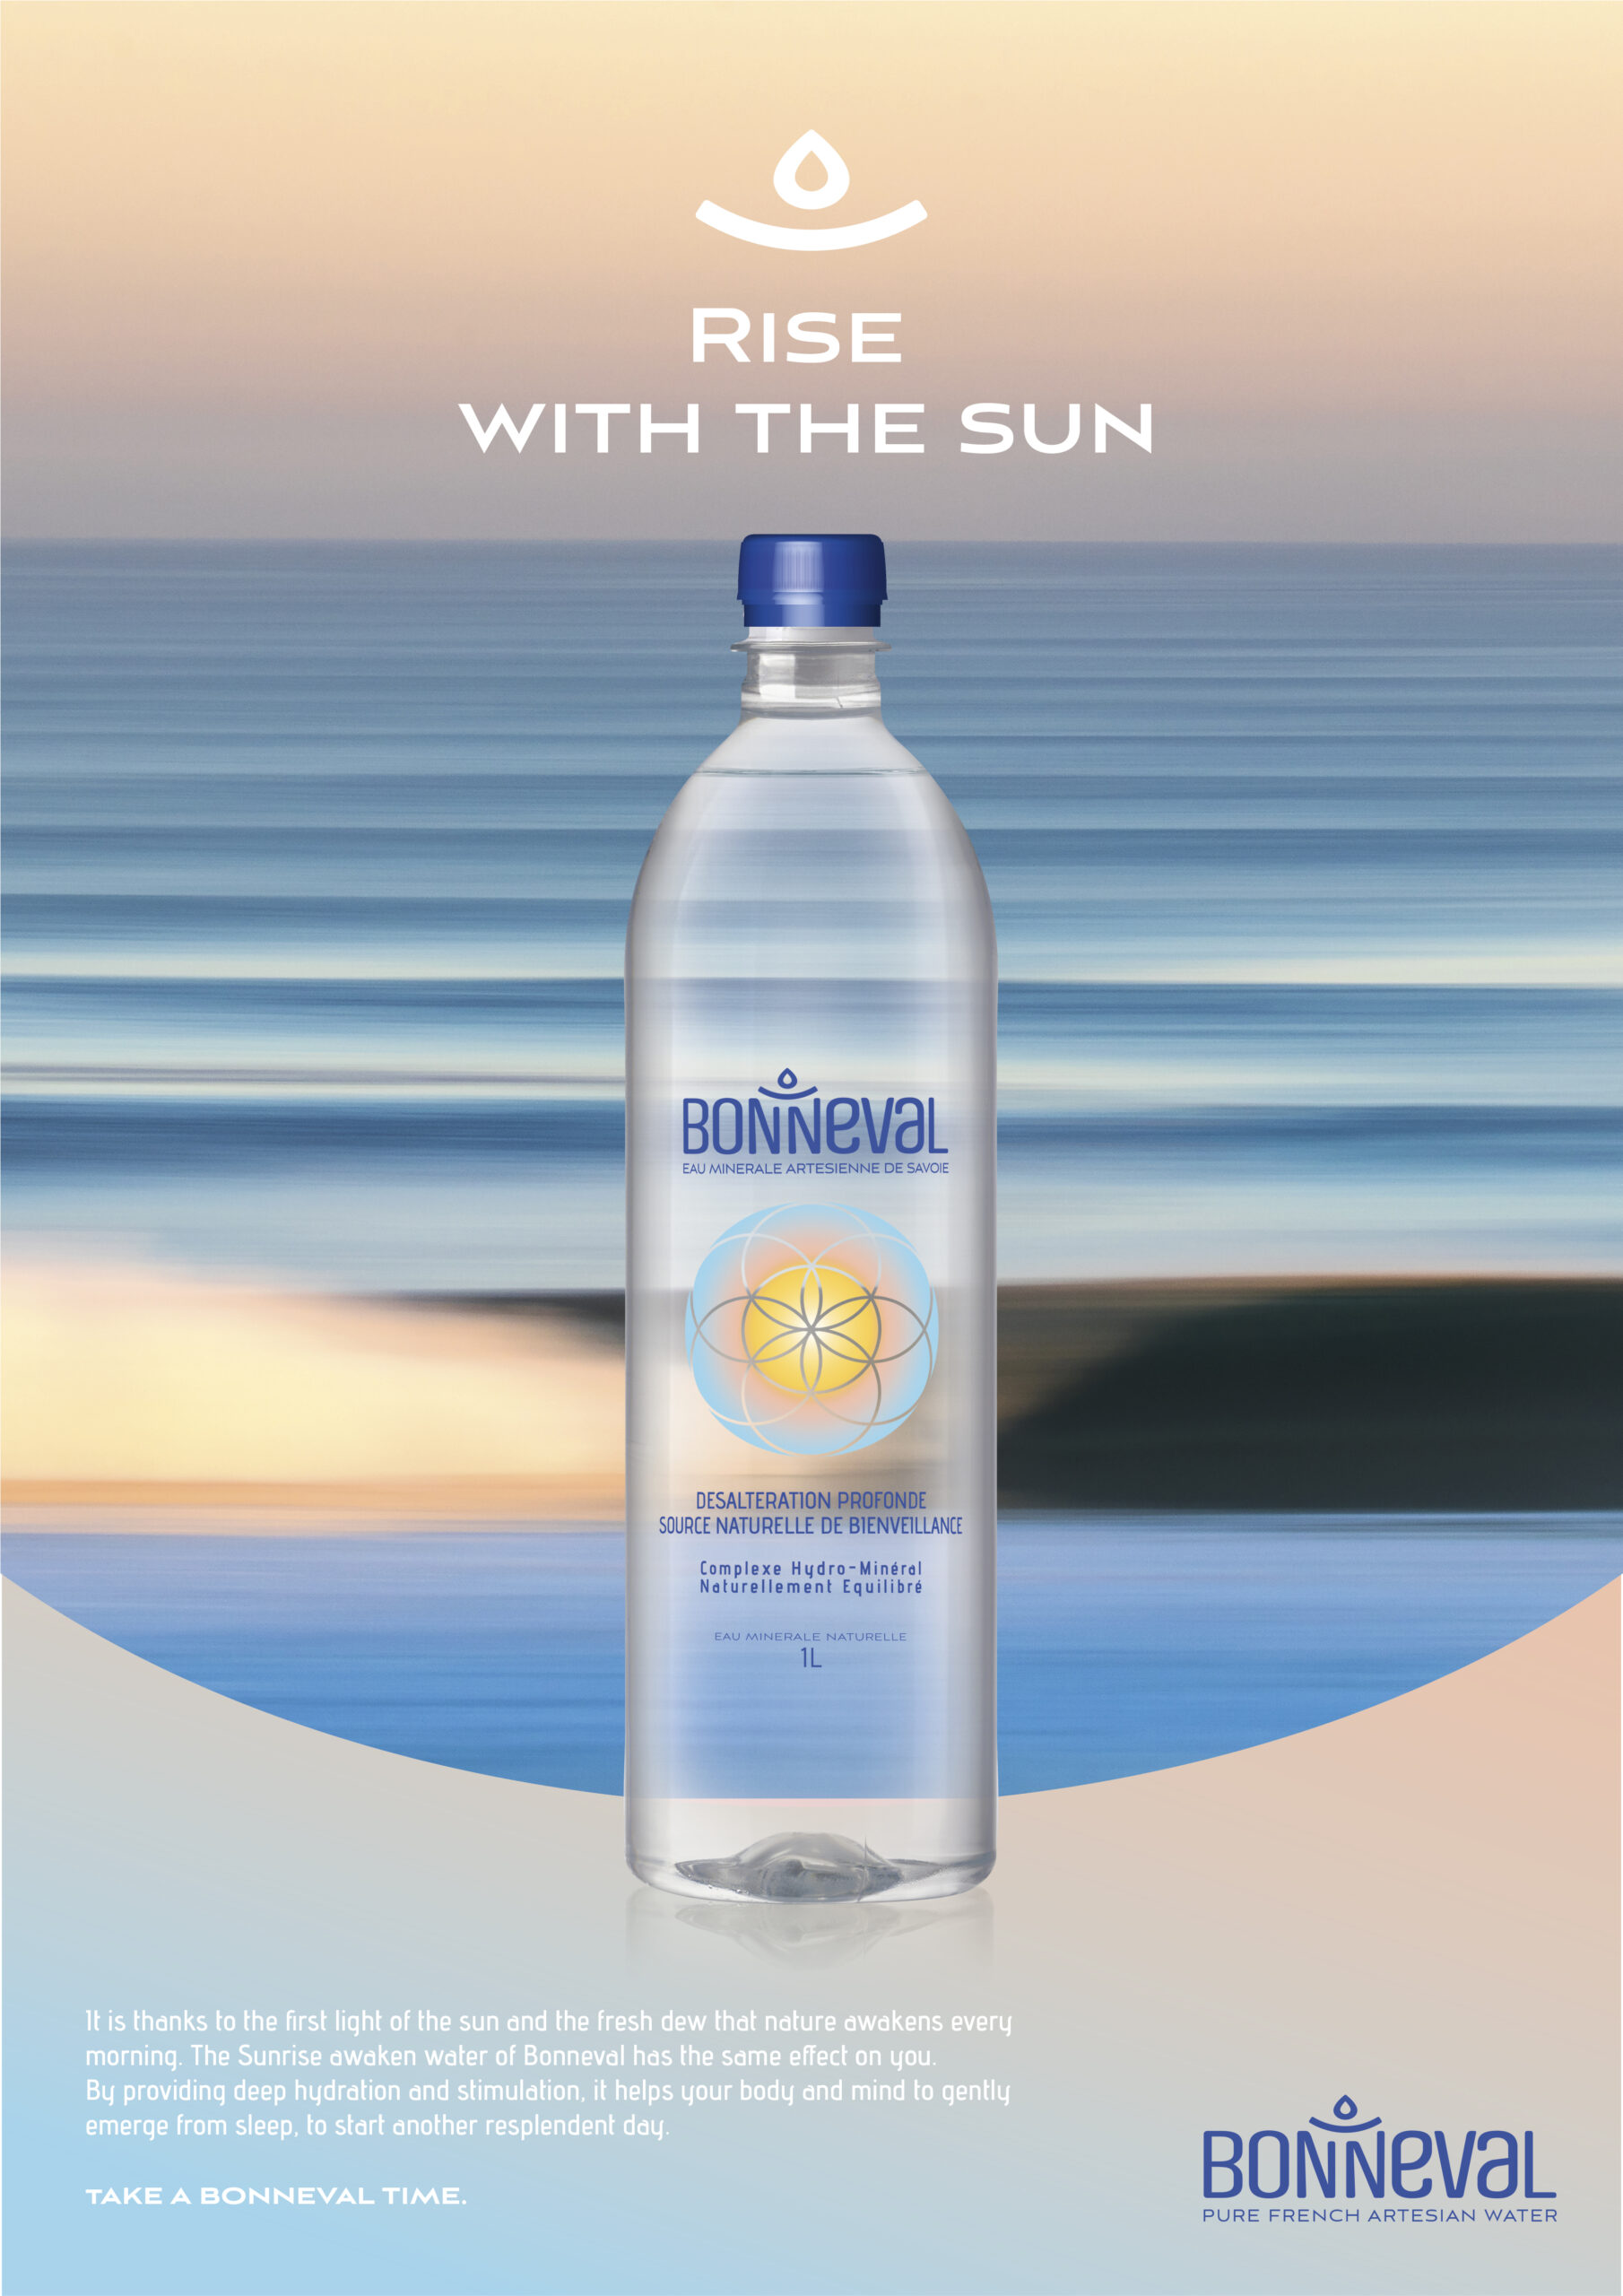 Annonce-presse en anglais pour la marque d'eau Bonneval. Visuel d'une bouteille d'eau sur fond de mer au lever du soleil.